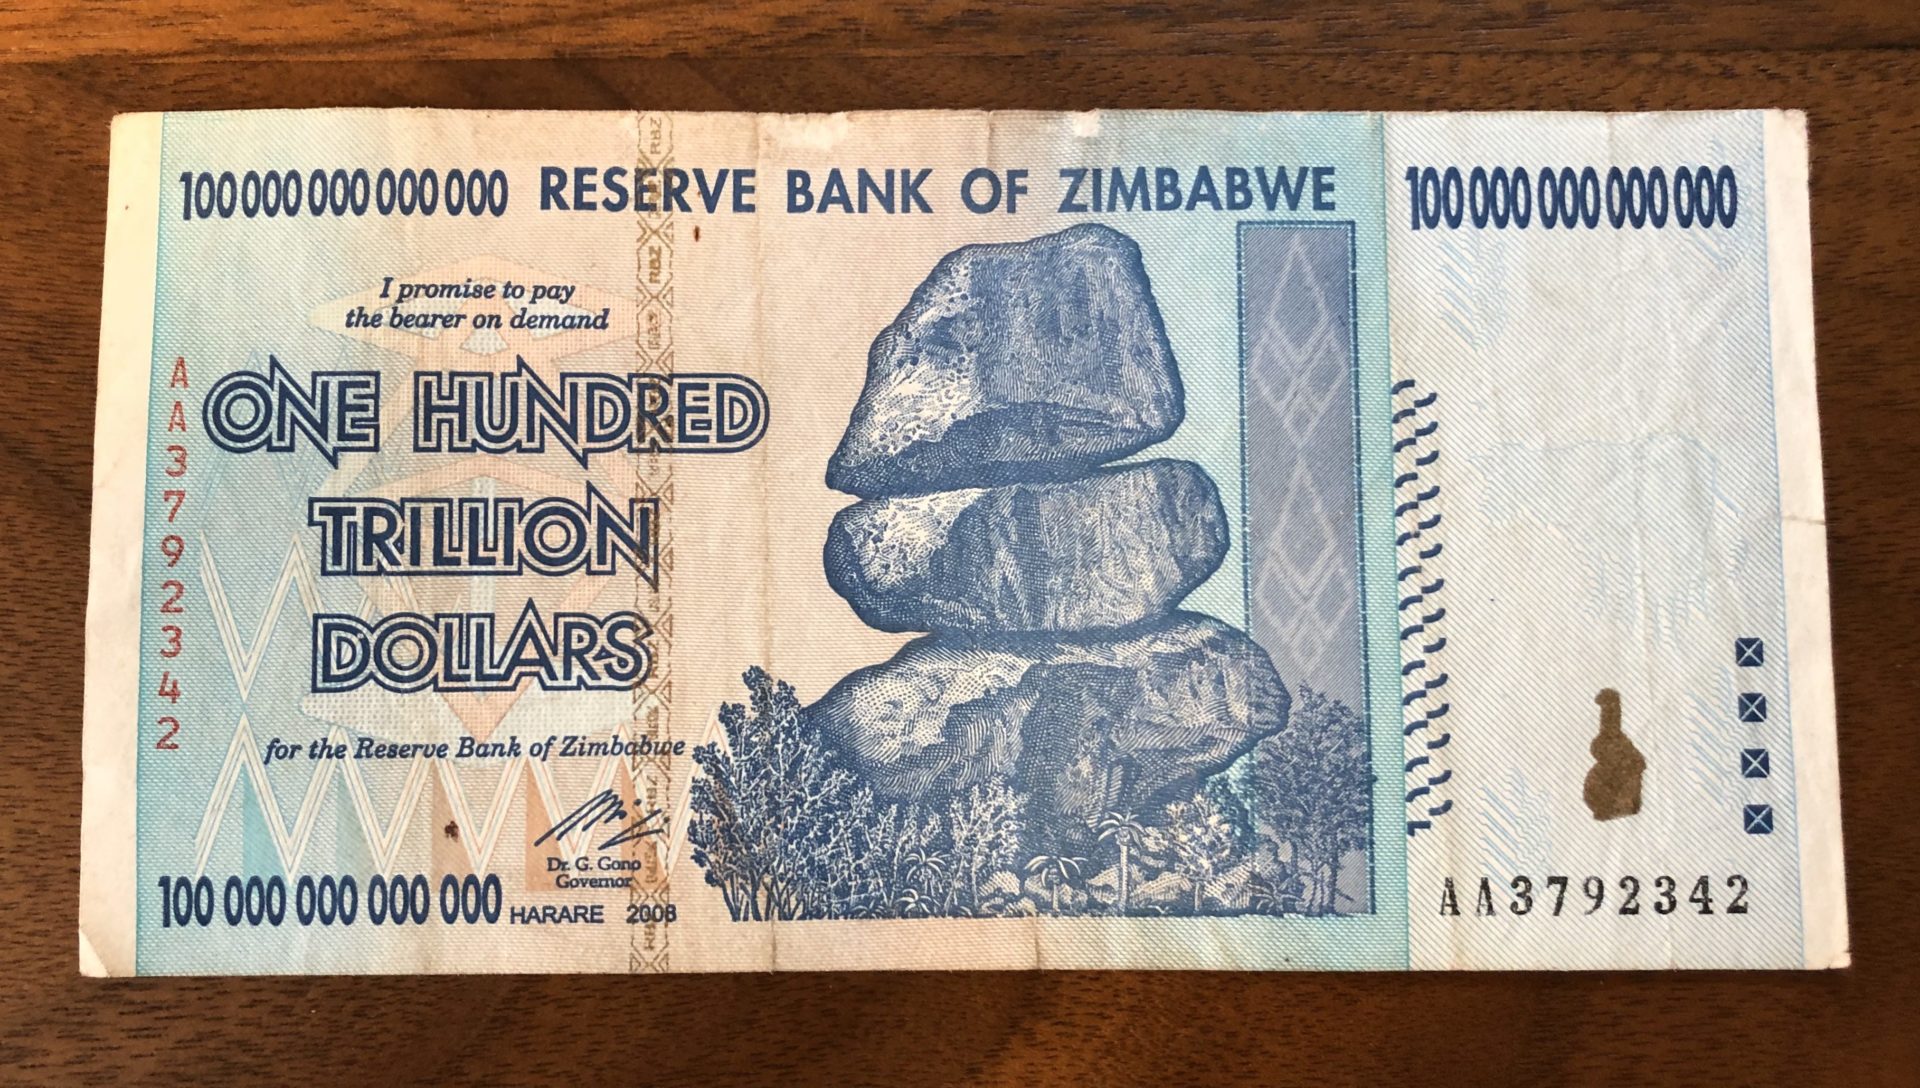 100trillion-zimbabuwe